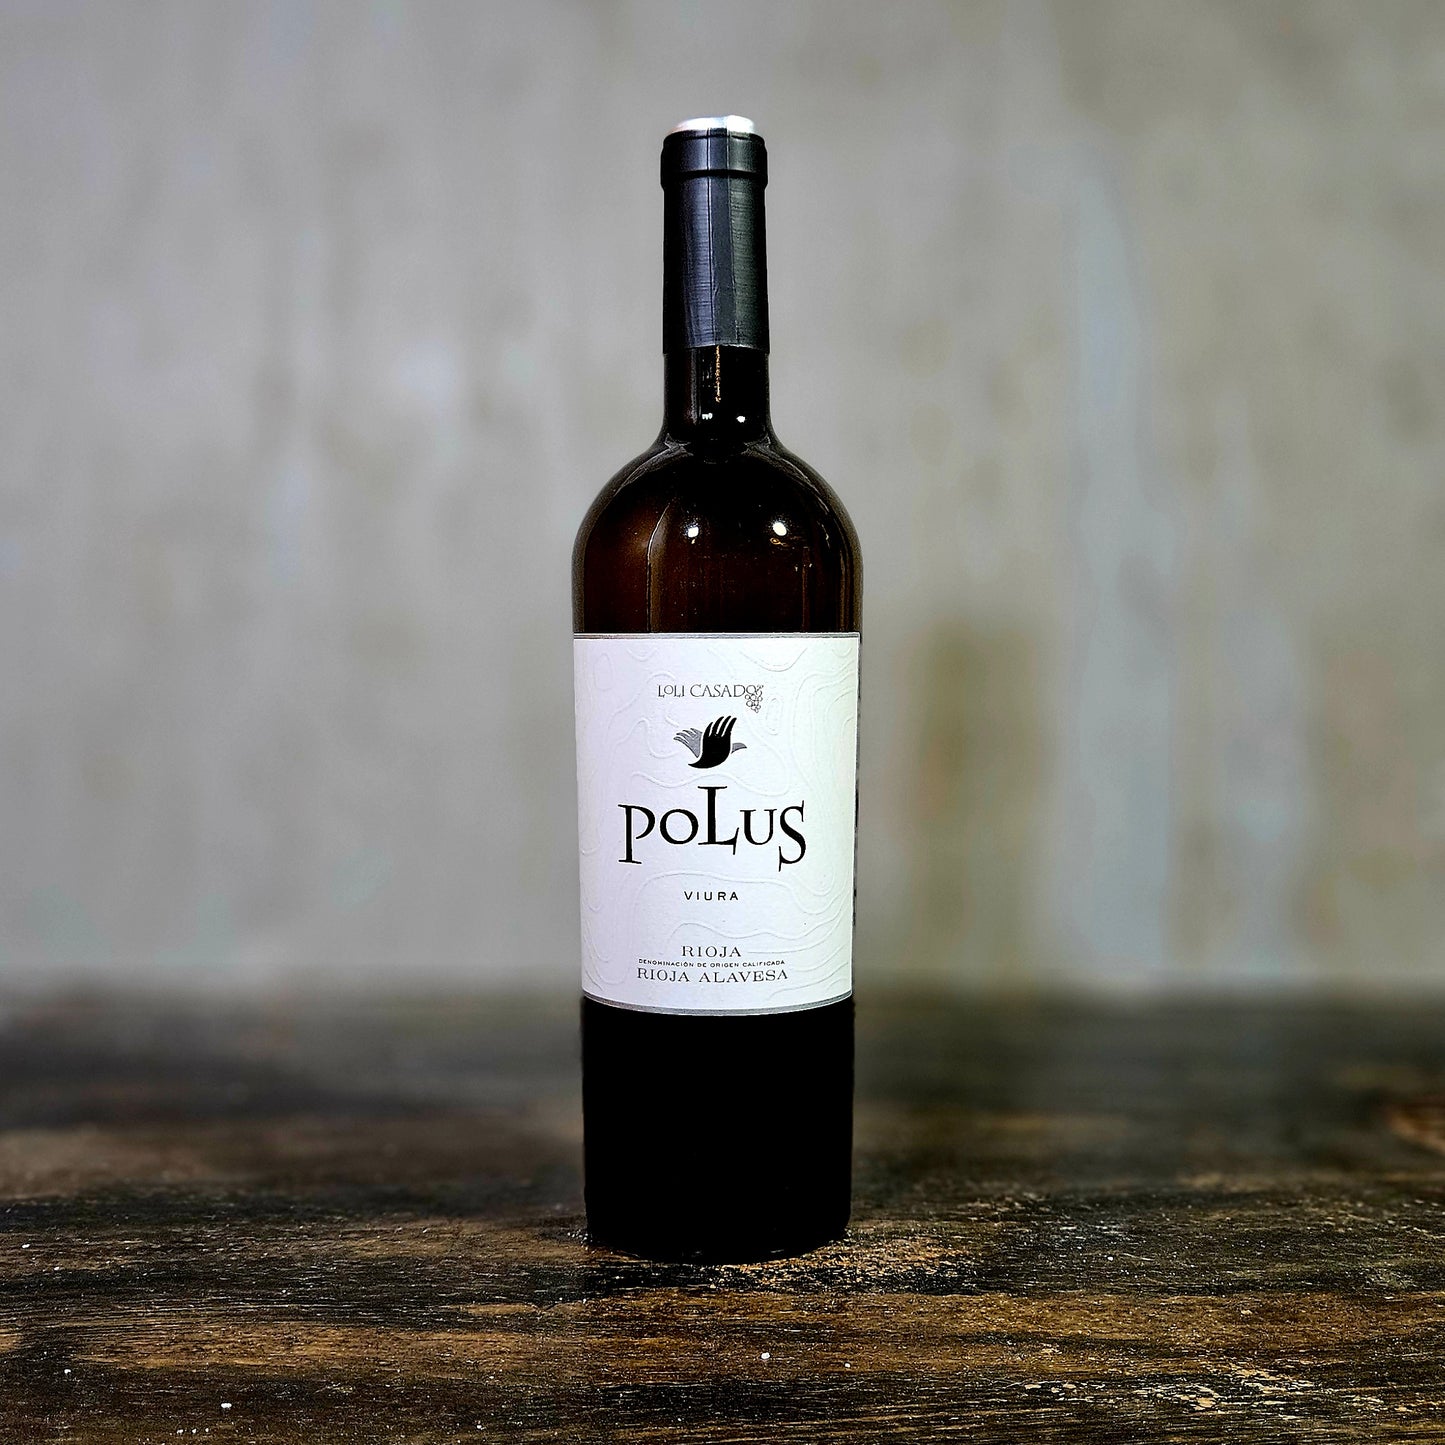 Bodega Loli Casado - 'Polus', Viura, Blanco, Rioja Alavesa, Spain (2022)